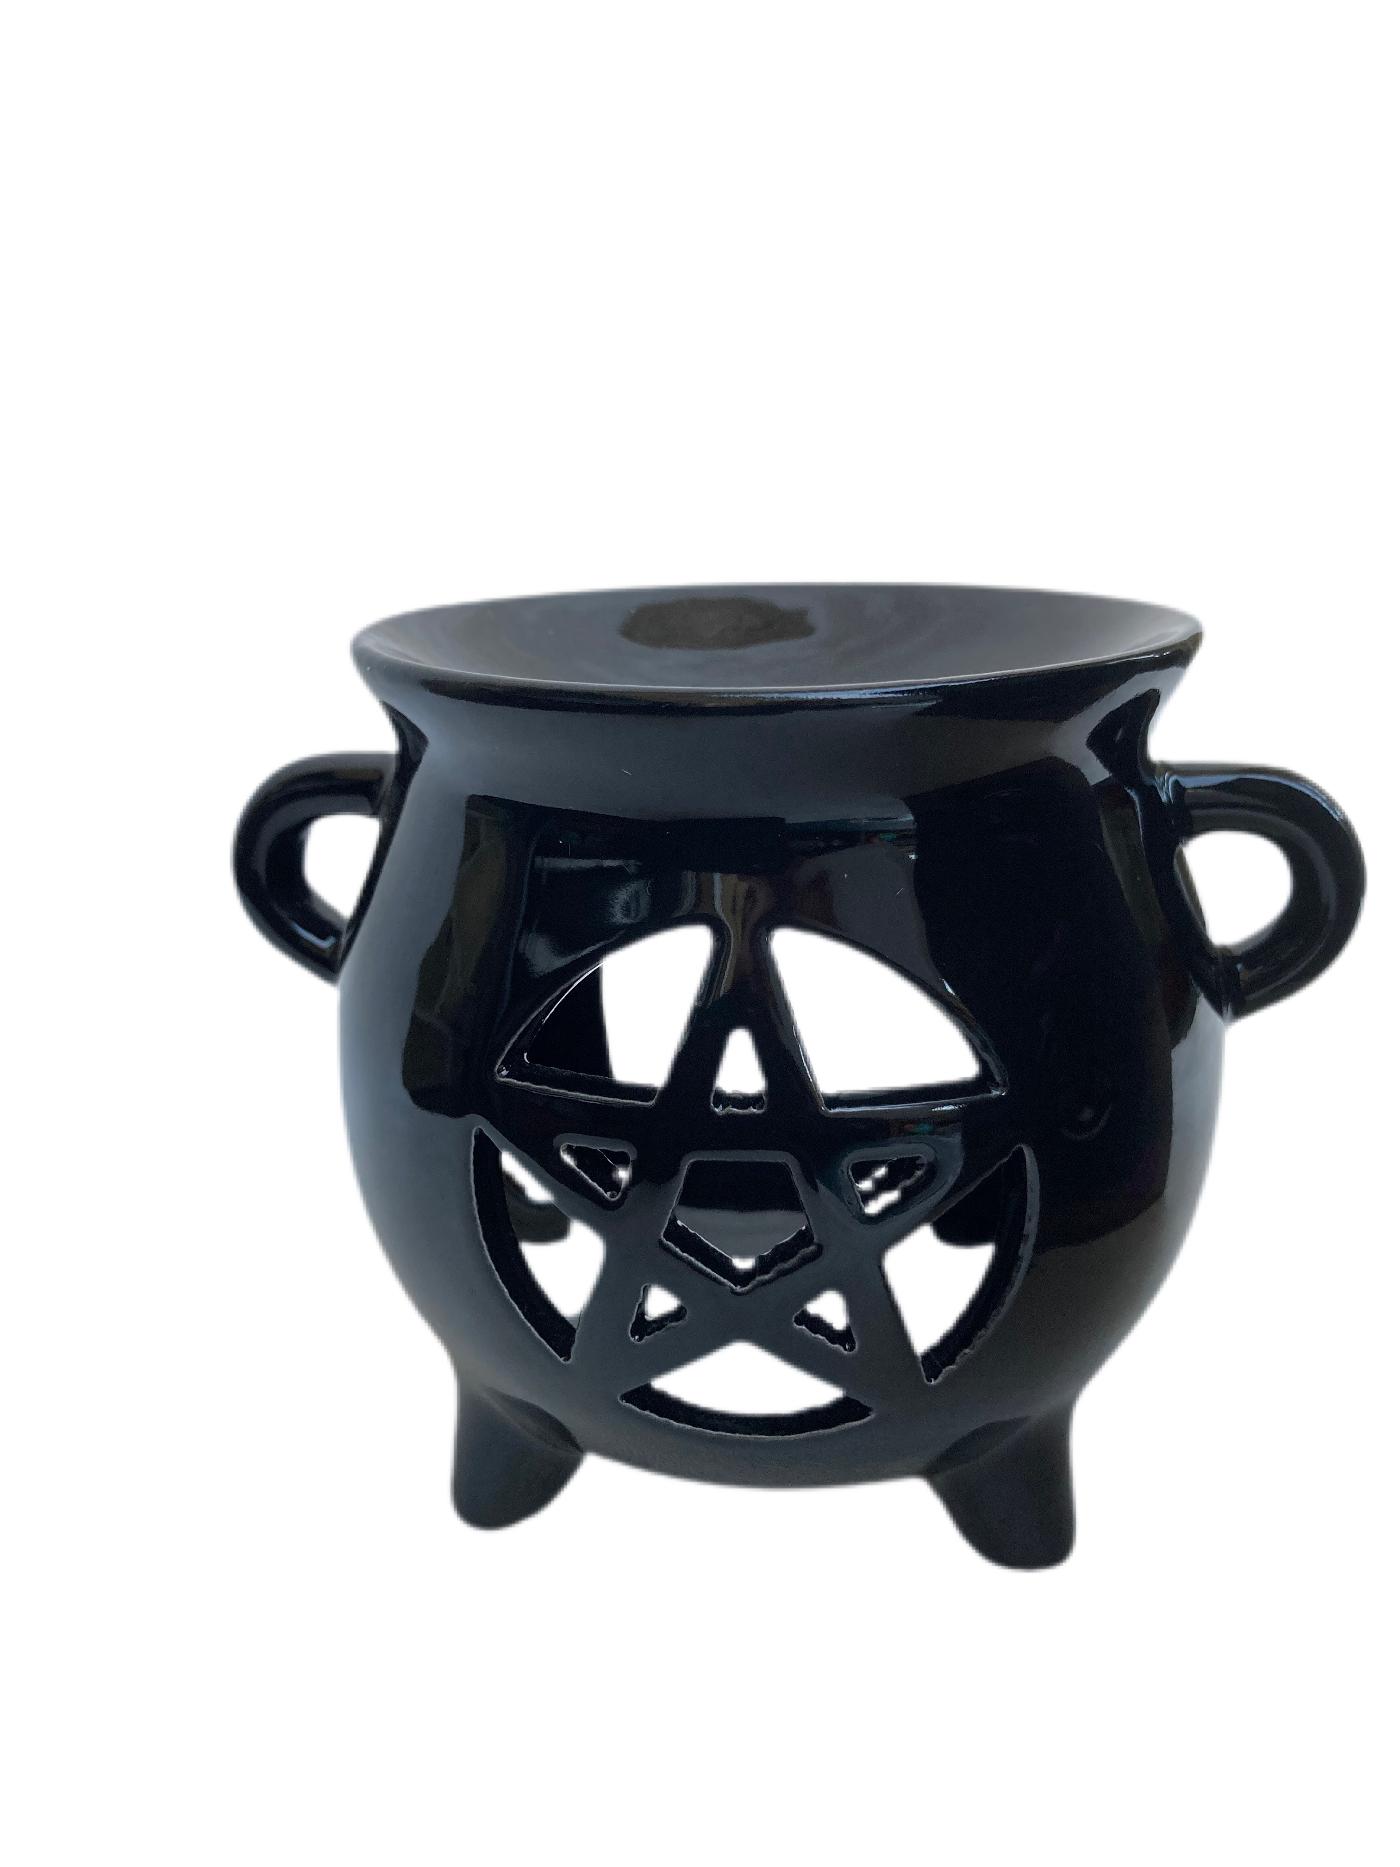 Cauldron oil burner with Pentagram design